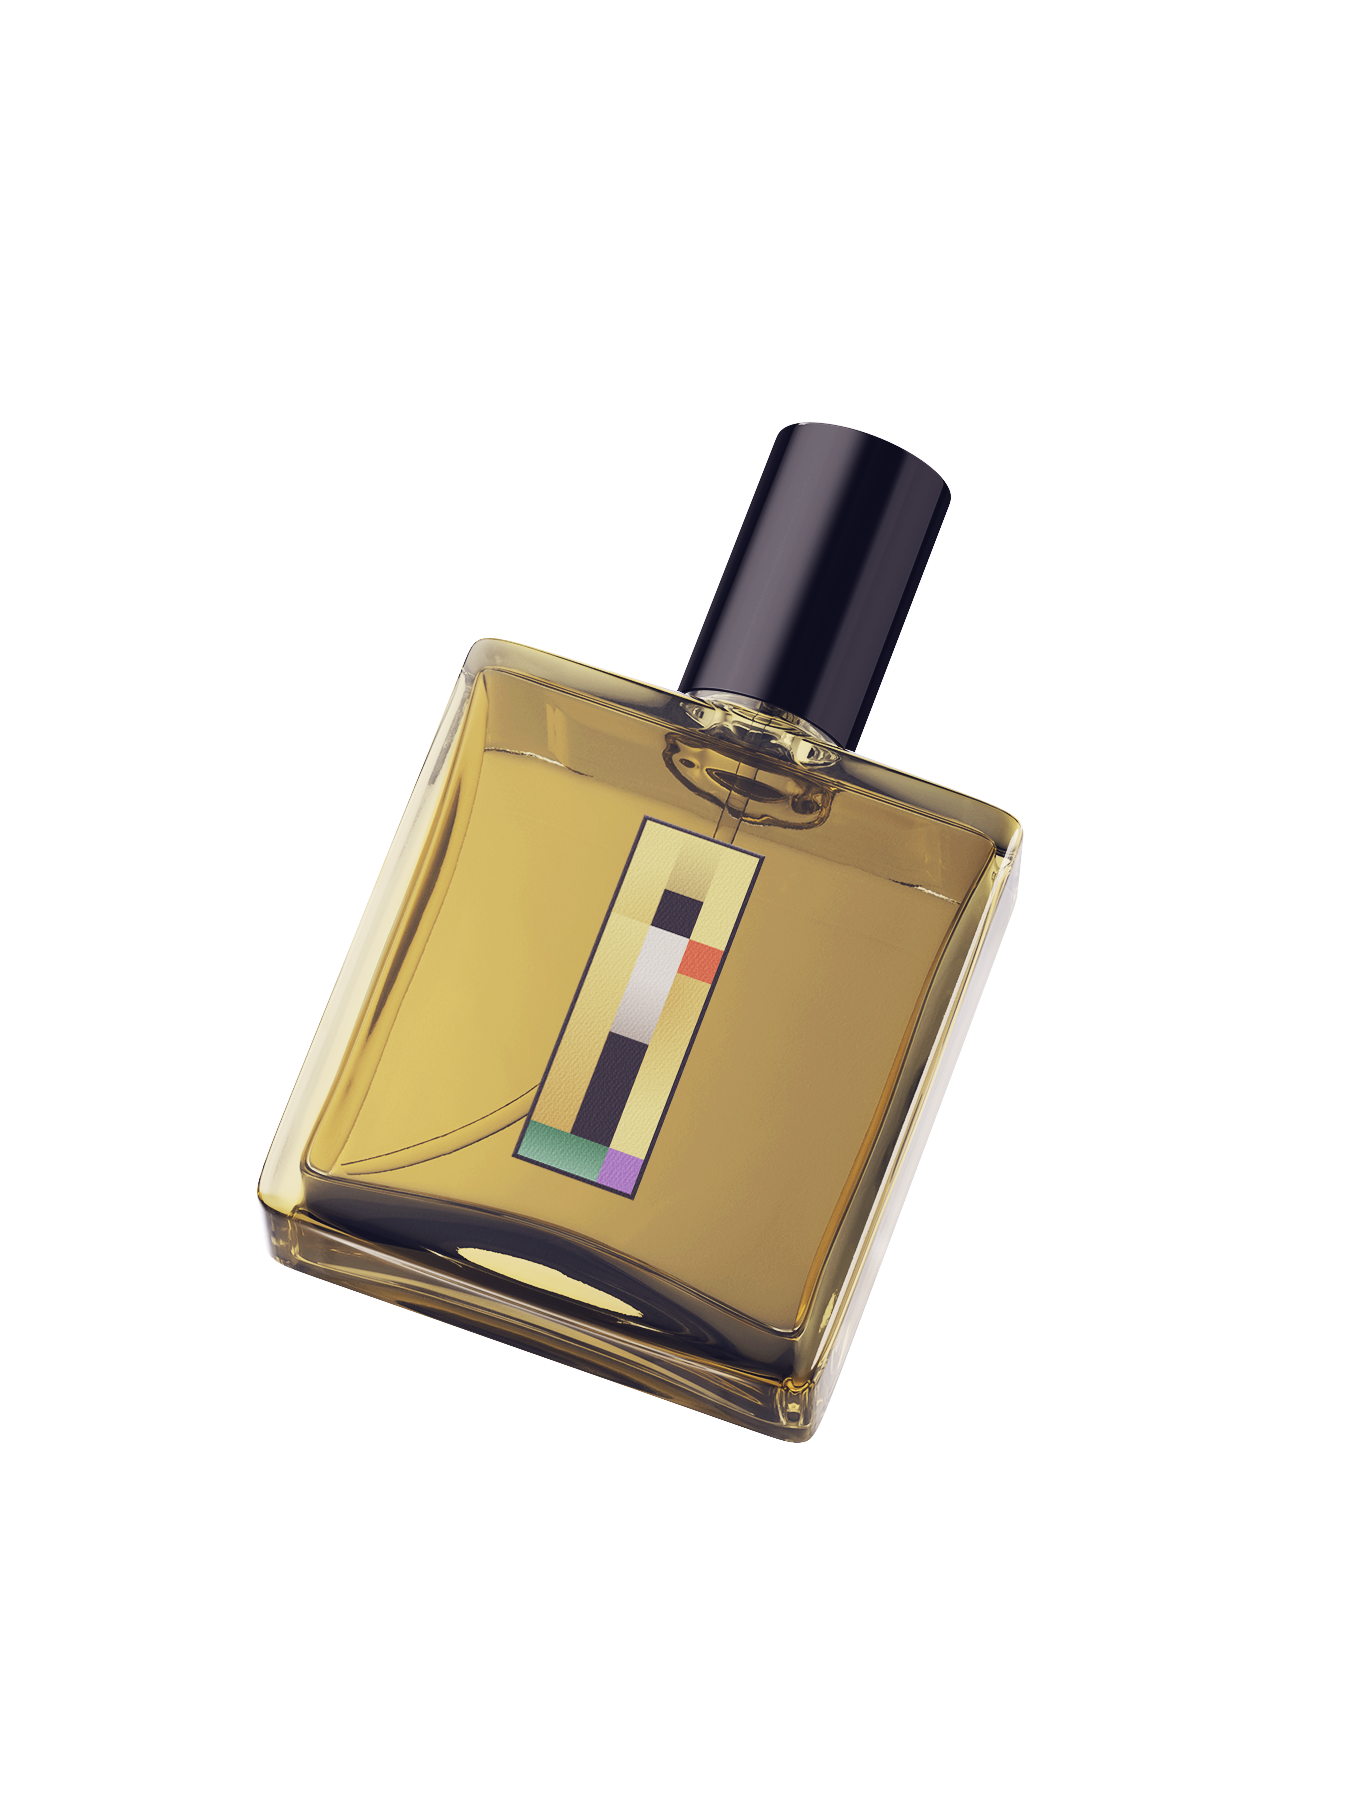 sara-novovitch-klimt-perfume.jpg